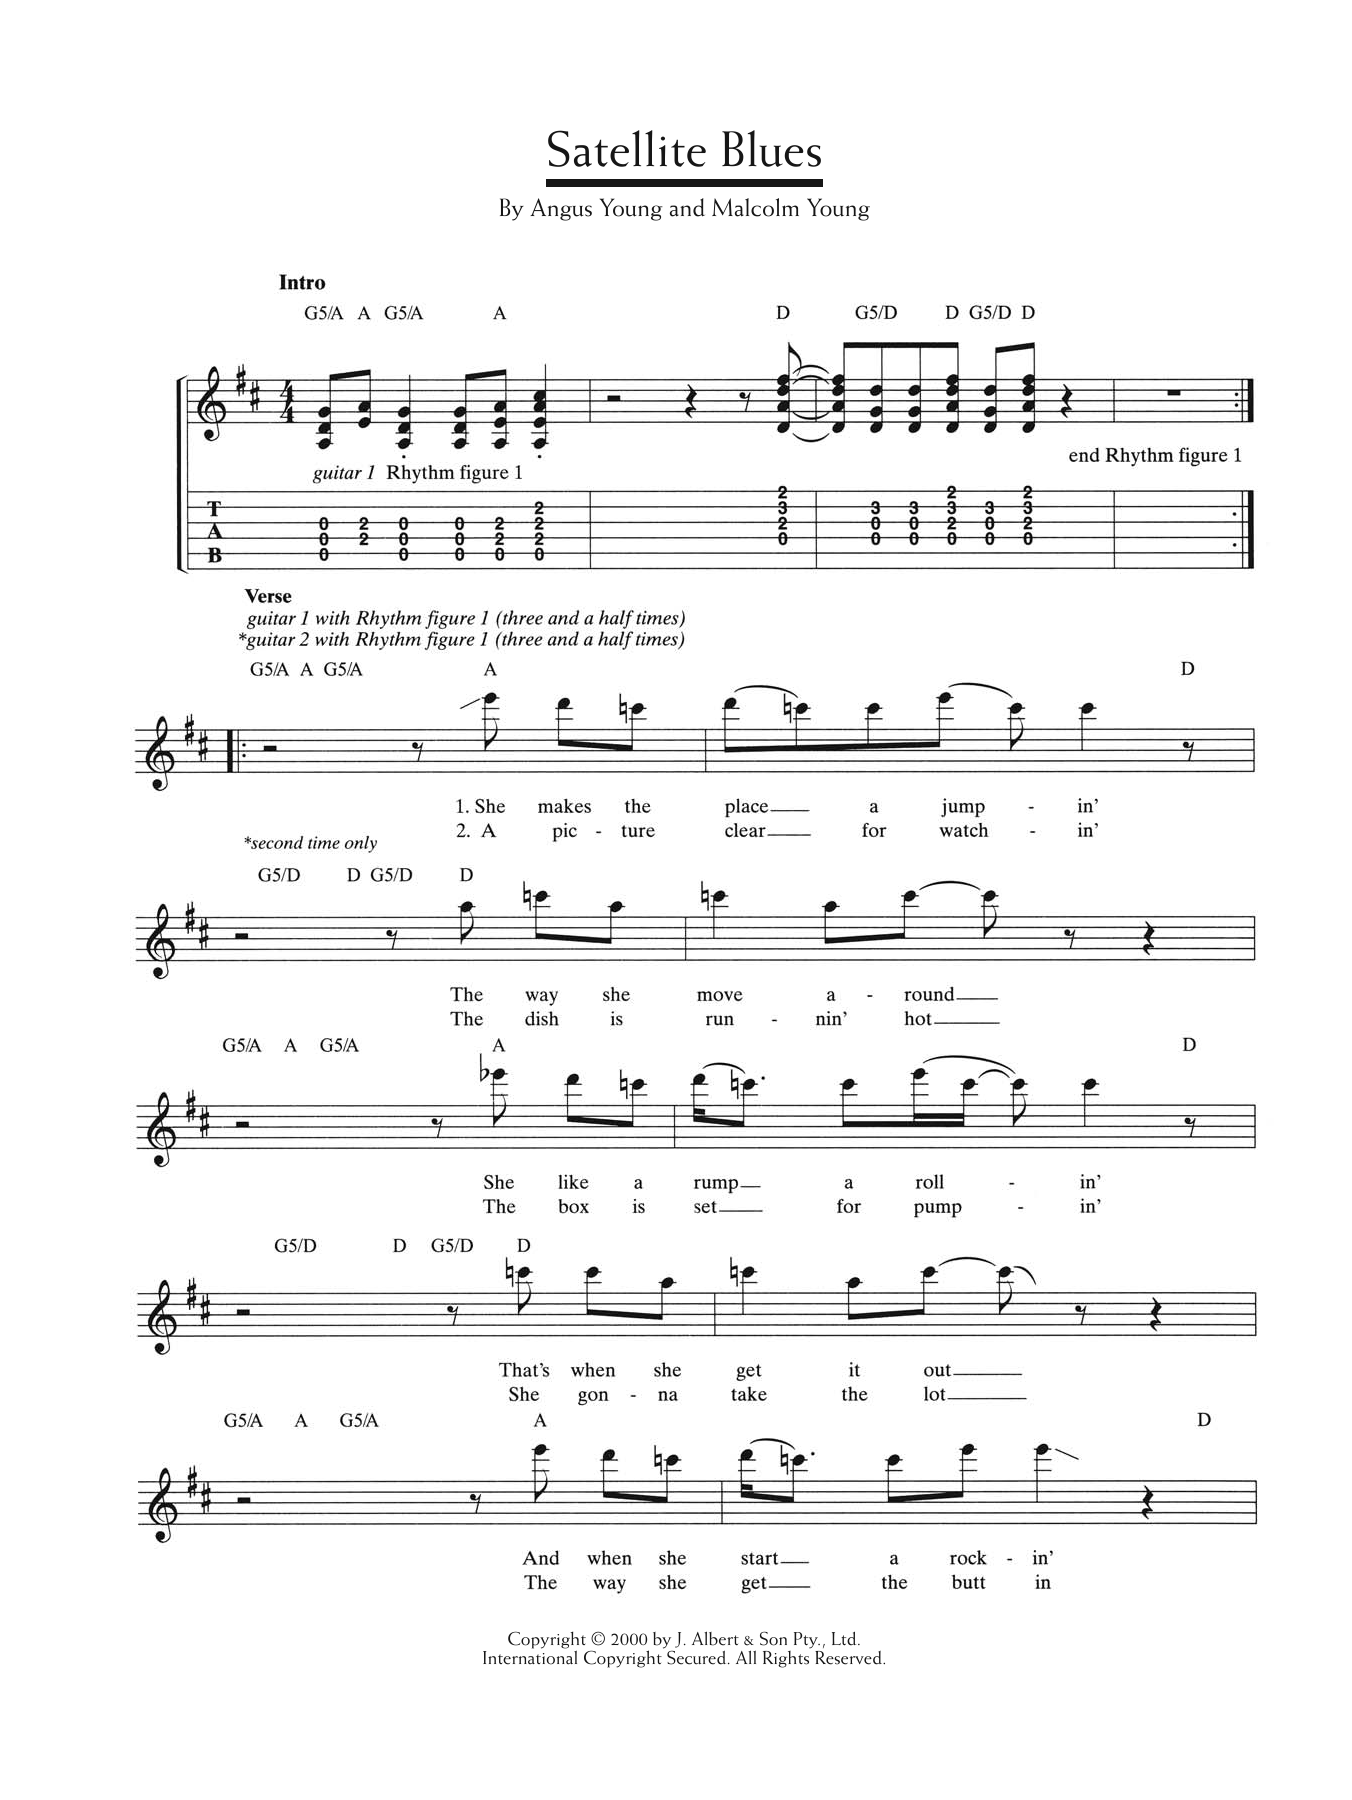 AC/DC Satellite Blues Sheet Music Notes & Chords for Lyrics & Chords - Download or Print PDF